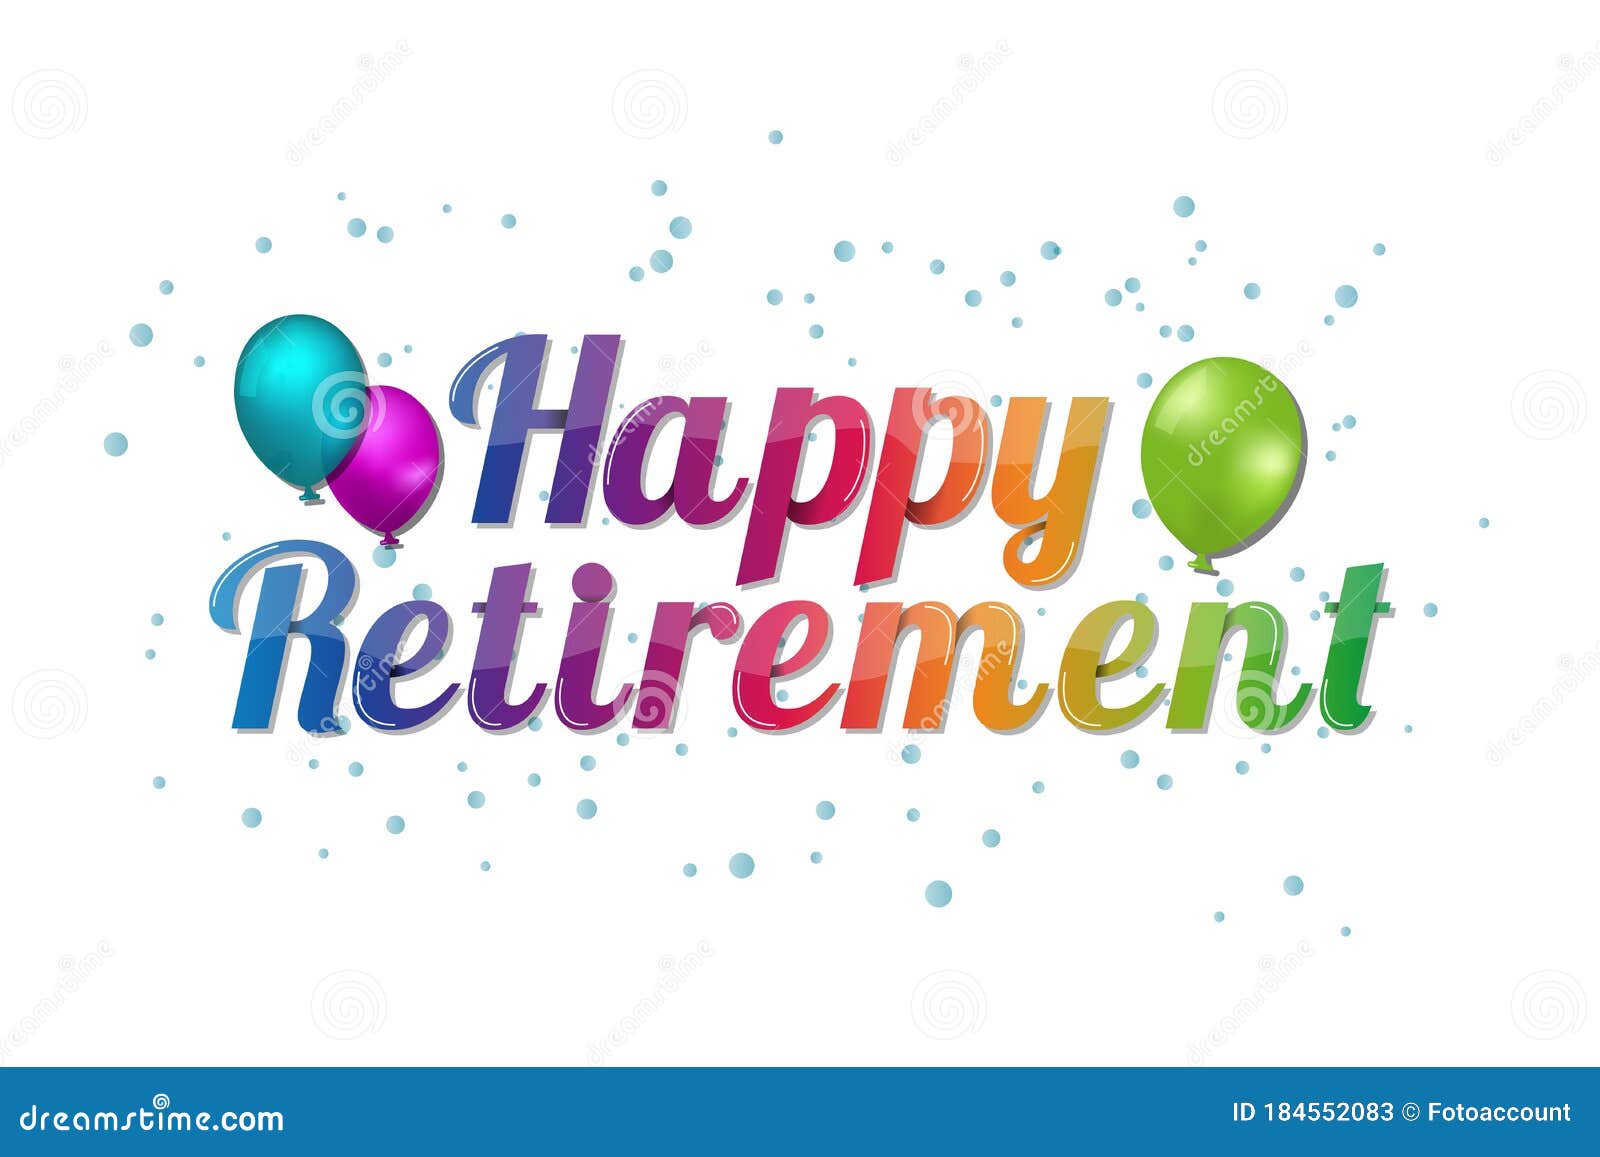 Happy Retirement Animation